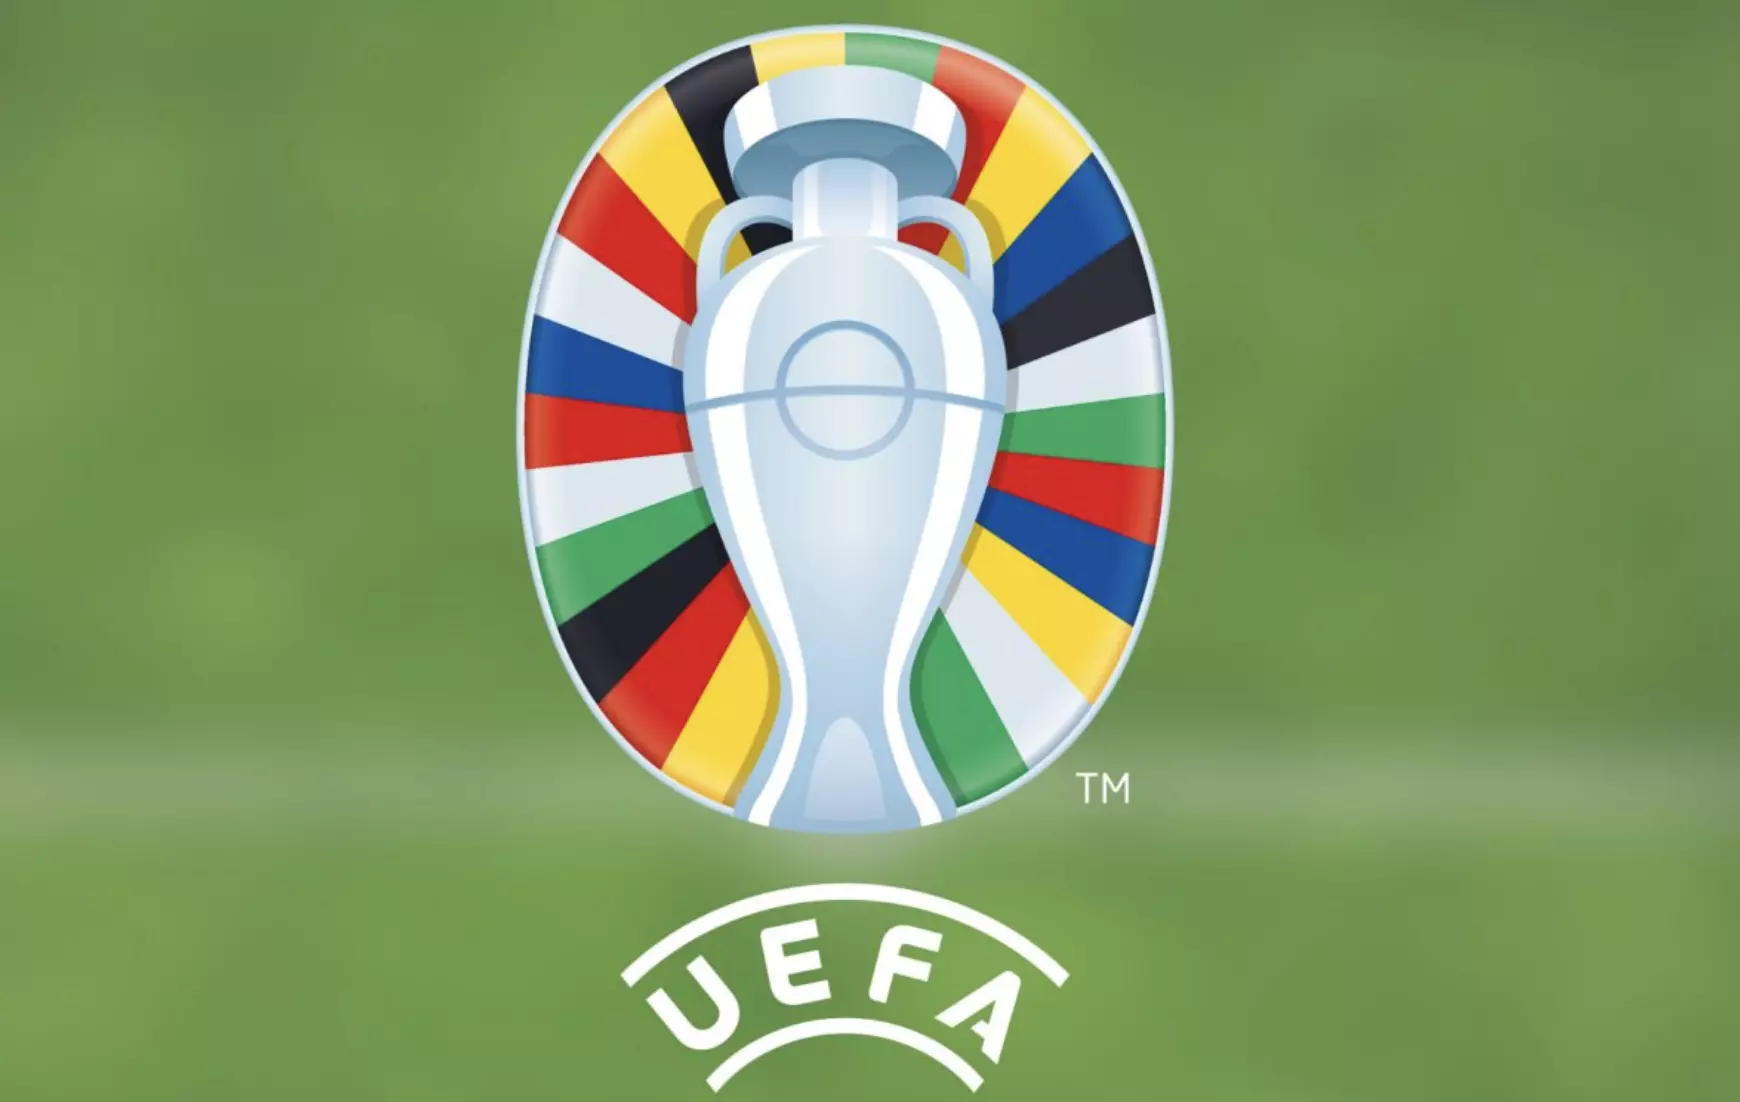 Iklan taruhan olahraga di Kejuaraan Sepak Bola Eropa